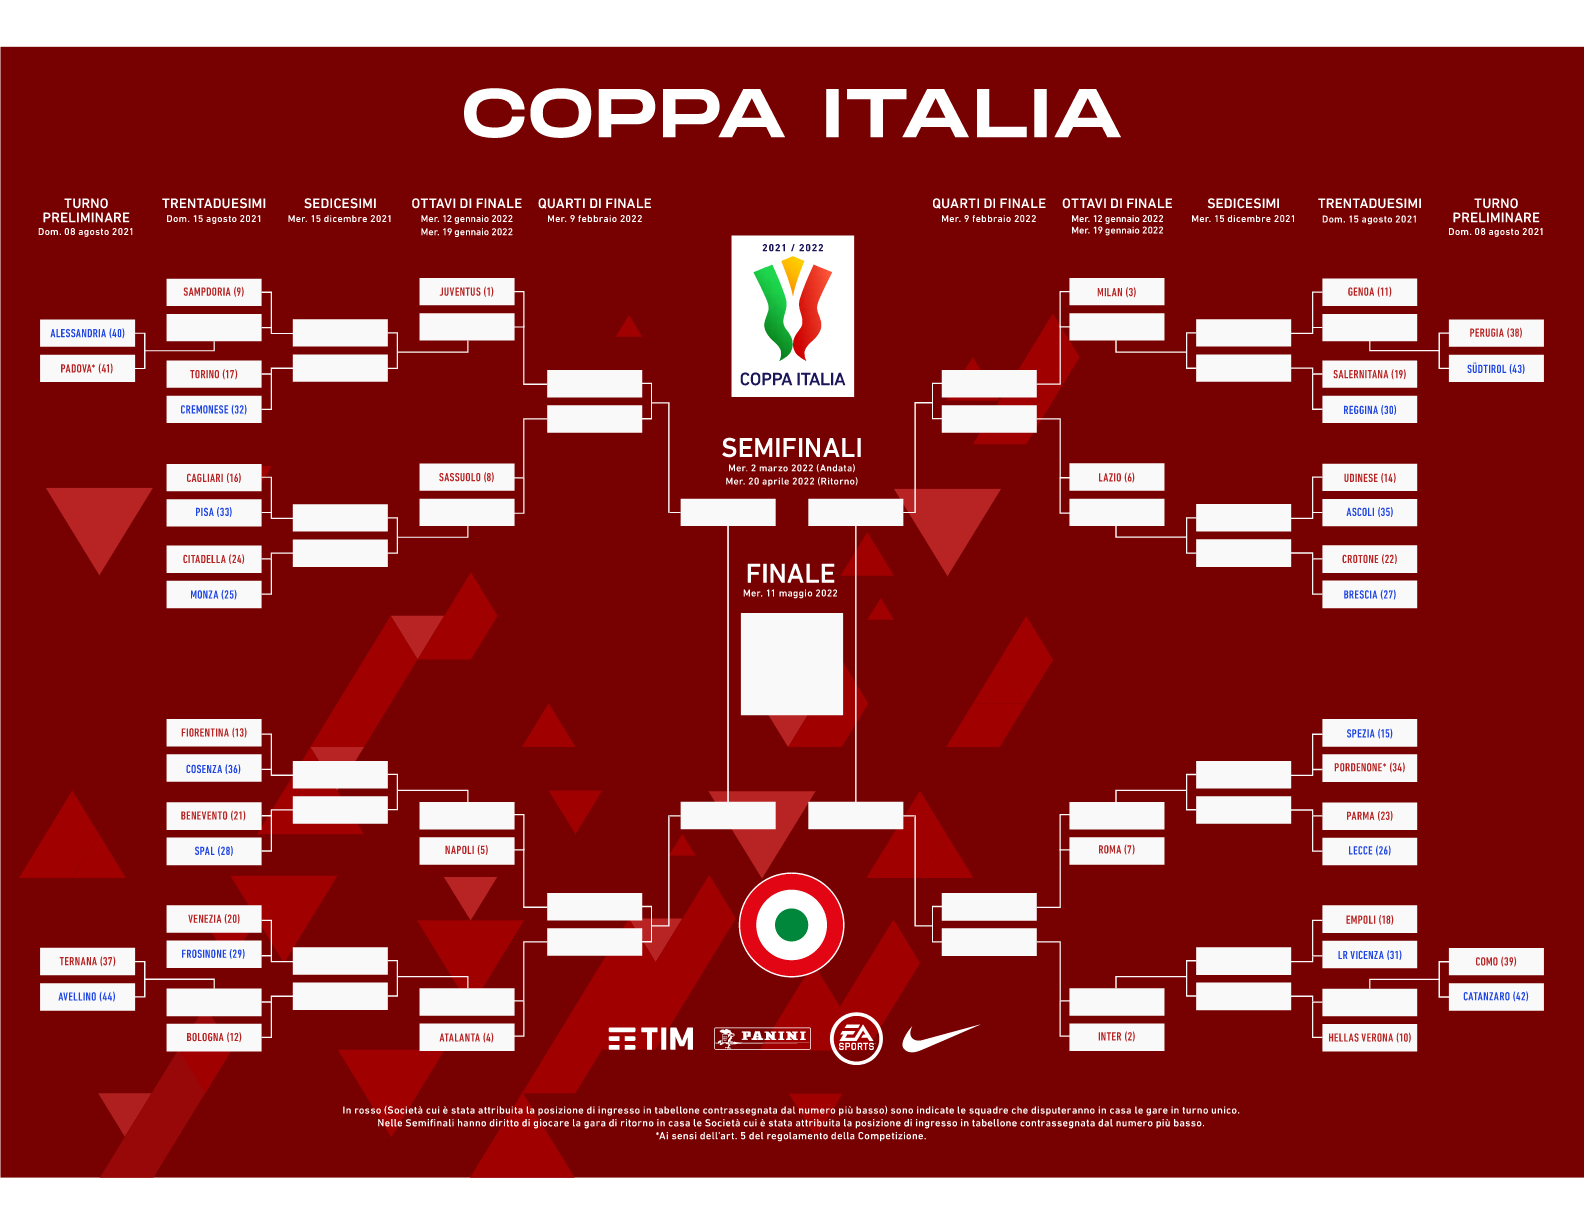 コッパ イタリア対戦表21 22 ニュース